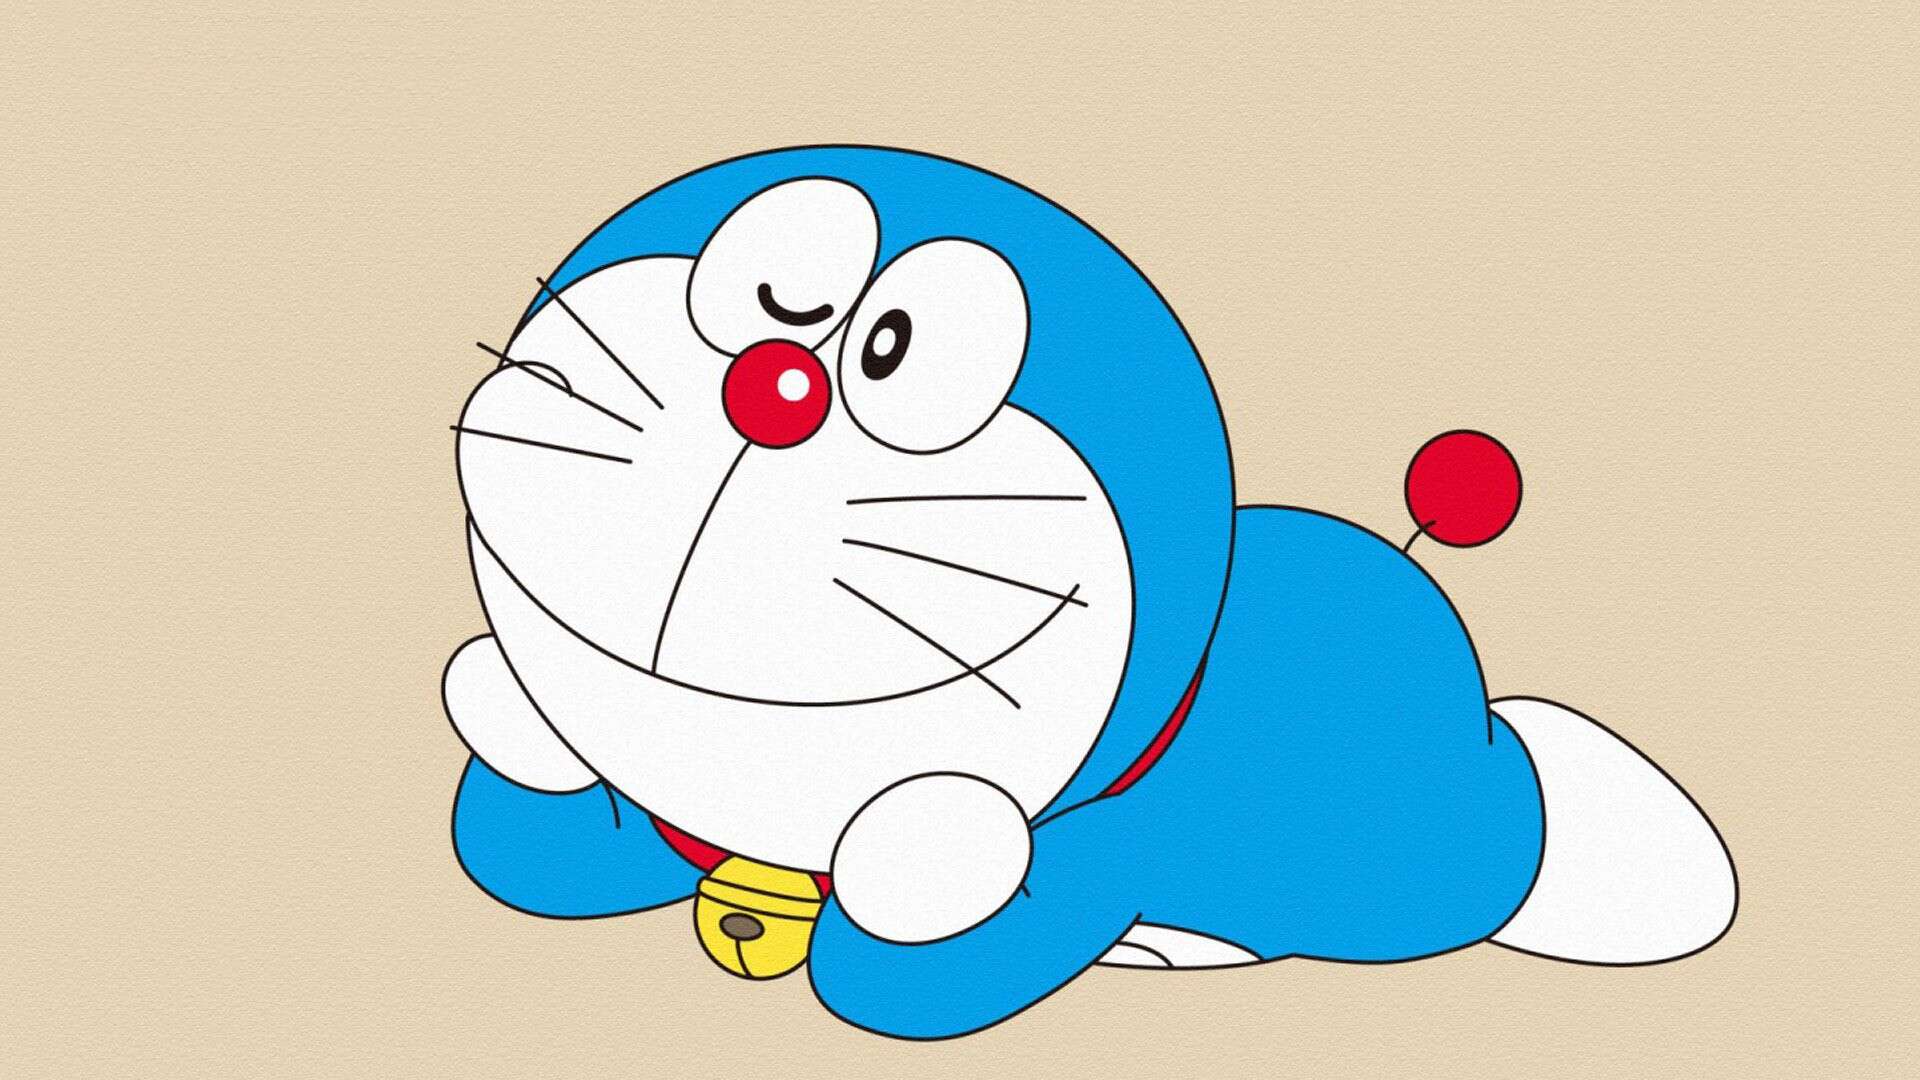 Japoneses elegem Rem como a personagem mais fofa dos animes